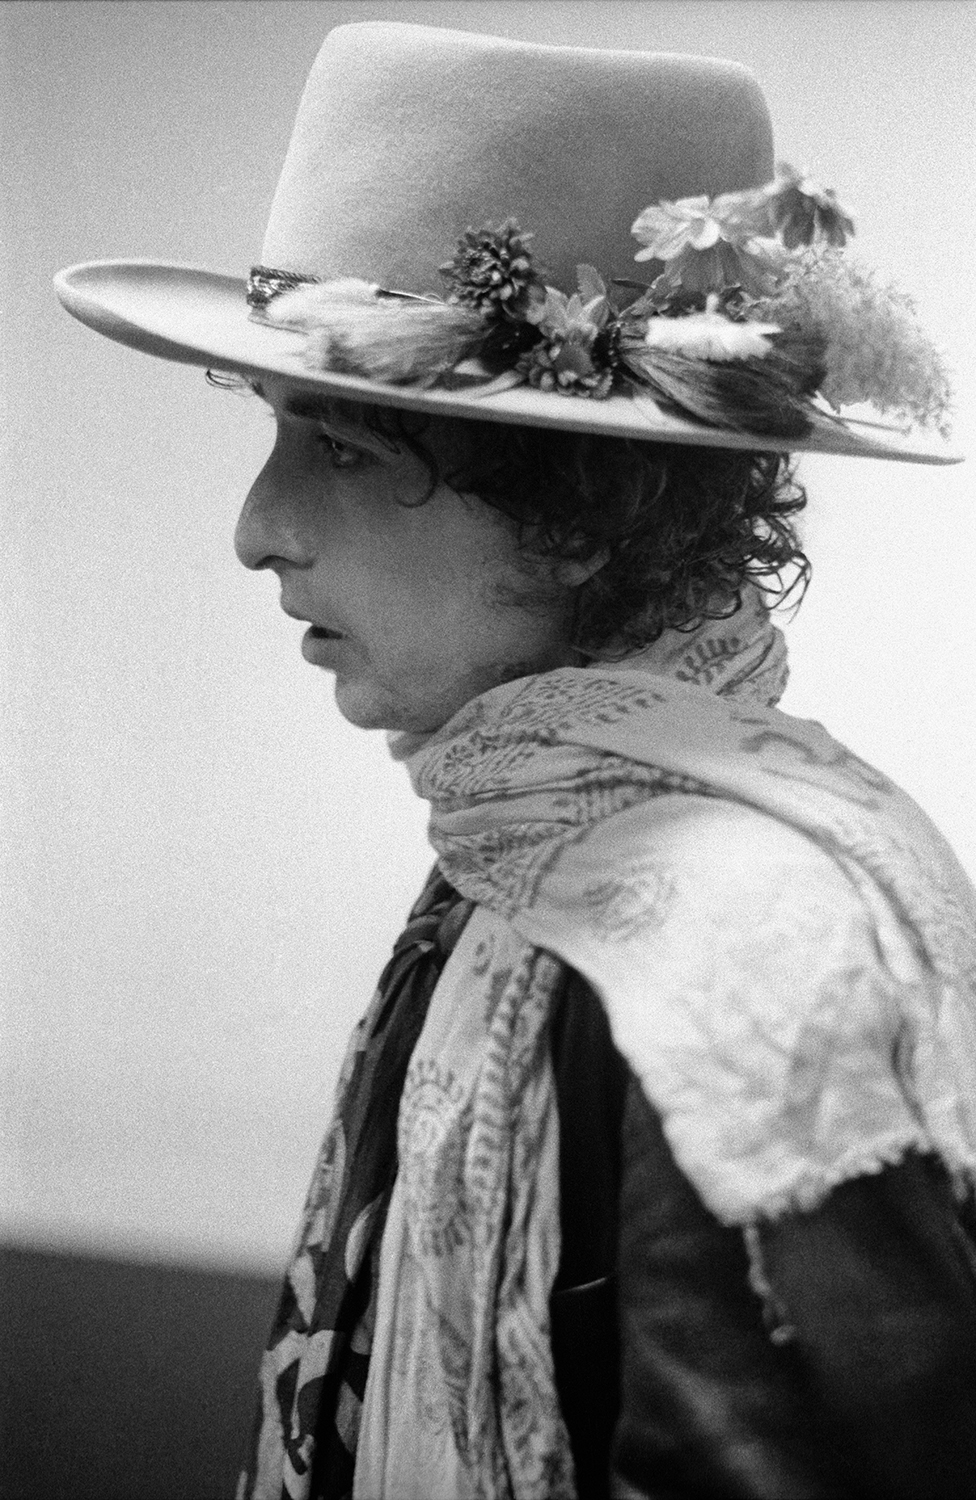 Ken Regan: Bob Dylan – Hat and scarf 